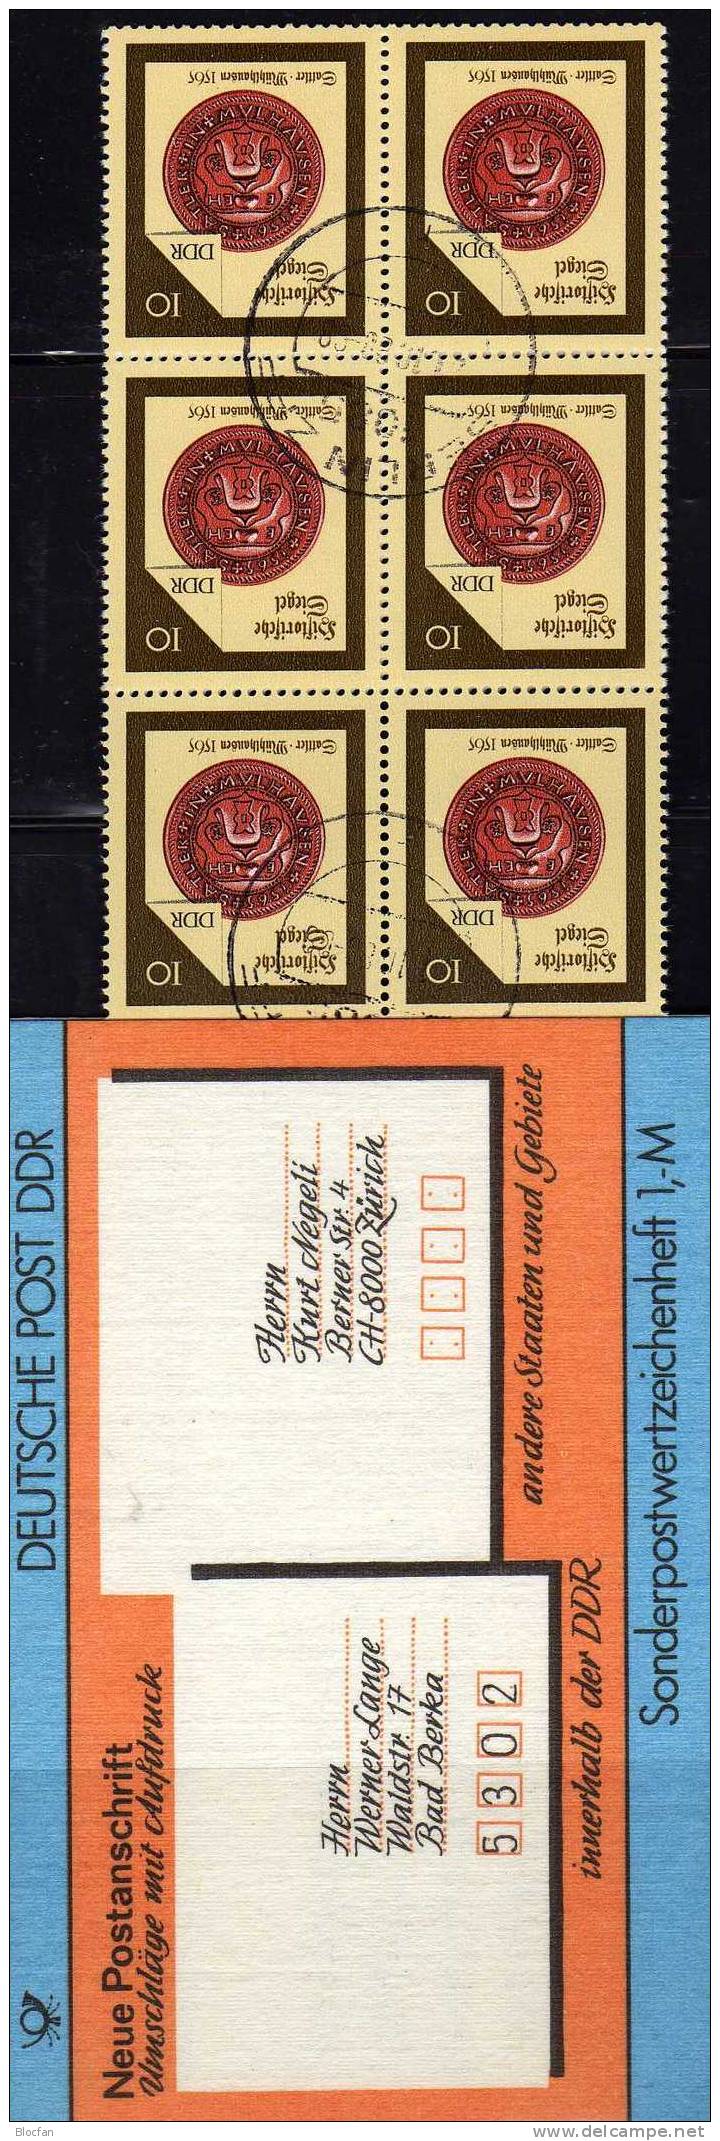 SMH 33 Internationale Anschrift 1987 Adressen DDR 3156 10x Plus SMHD33 O 9€ Mit Siegel Der Sattler Booklet From Germany - Booklets